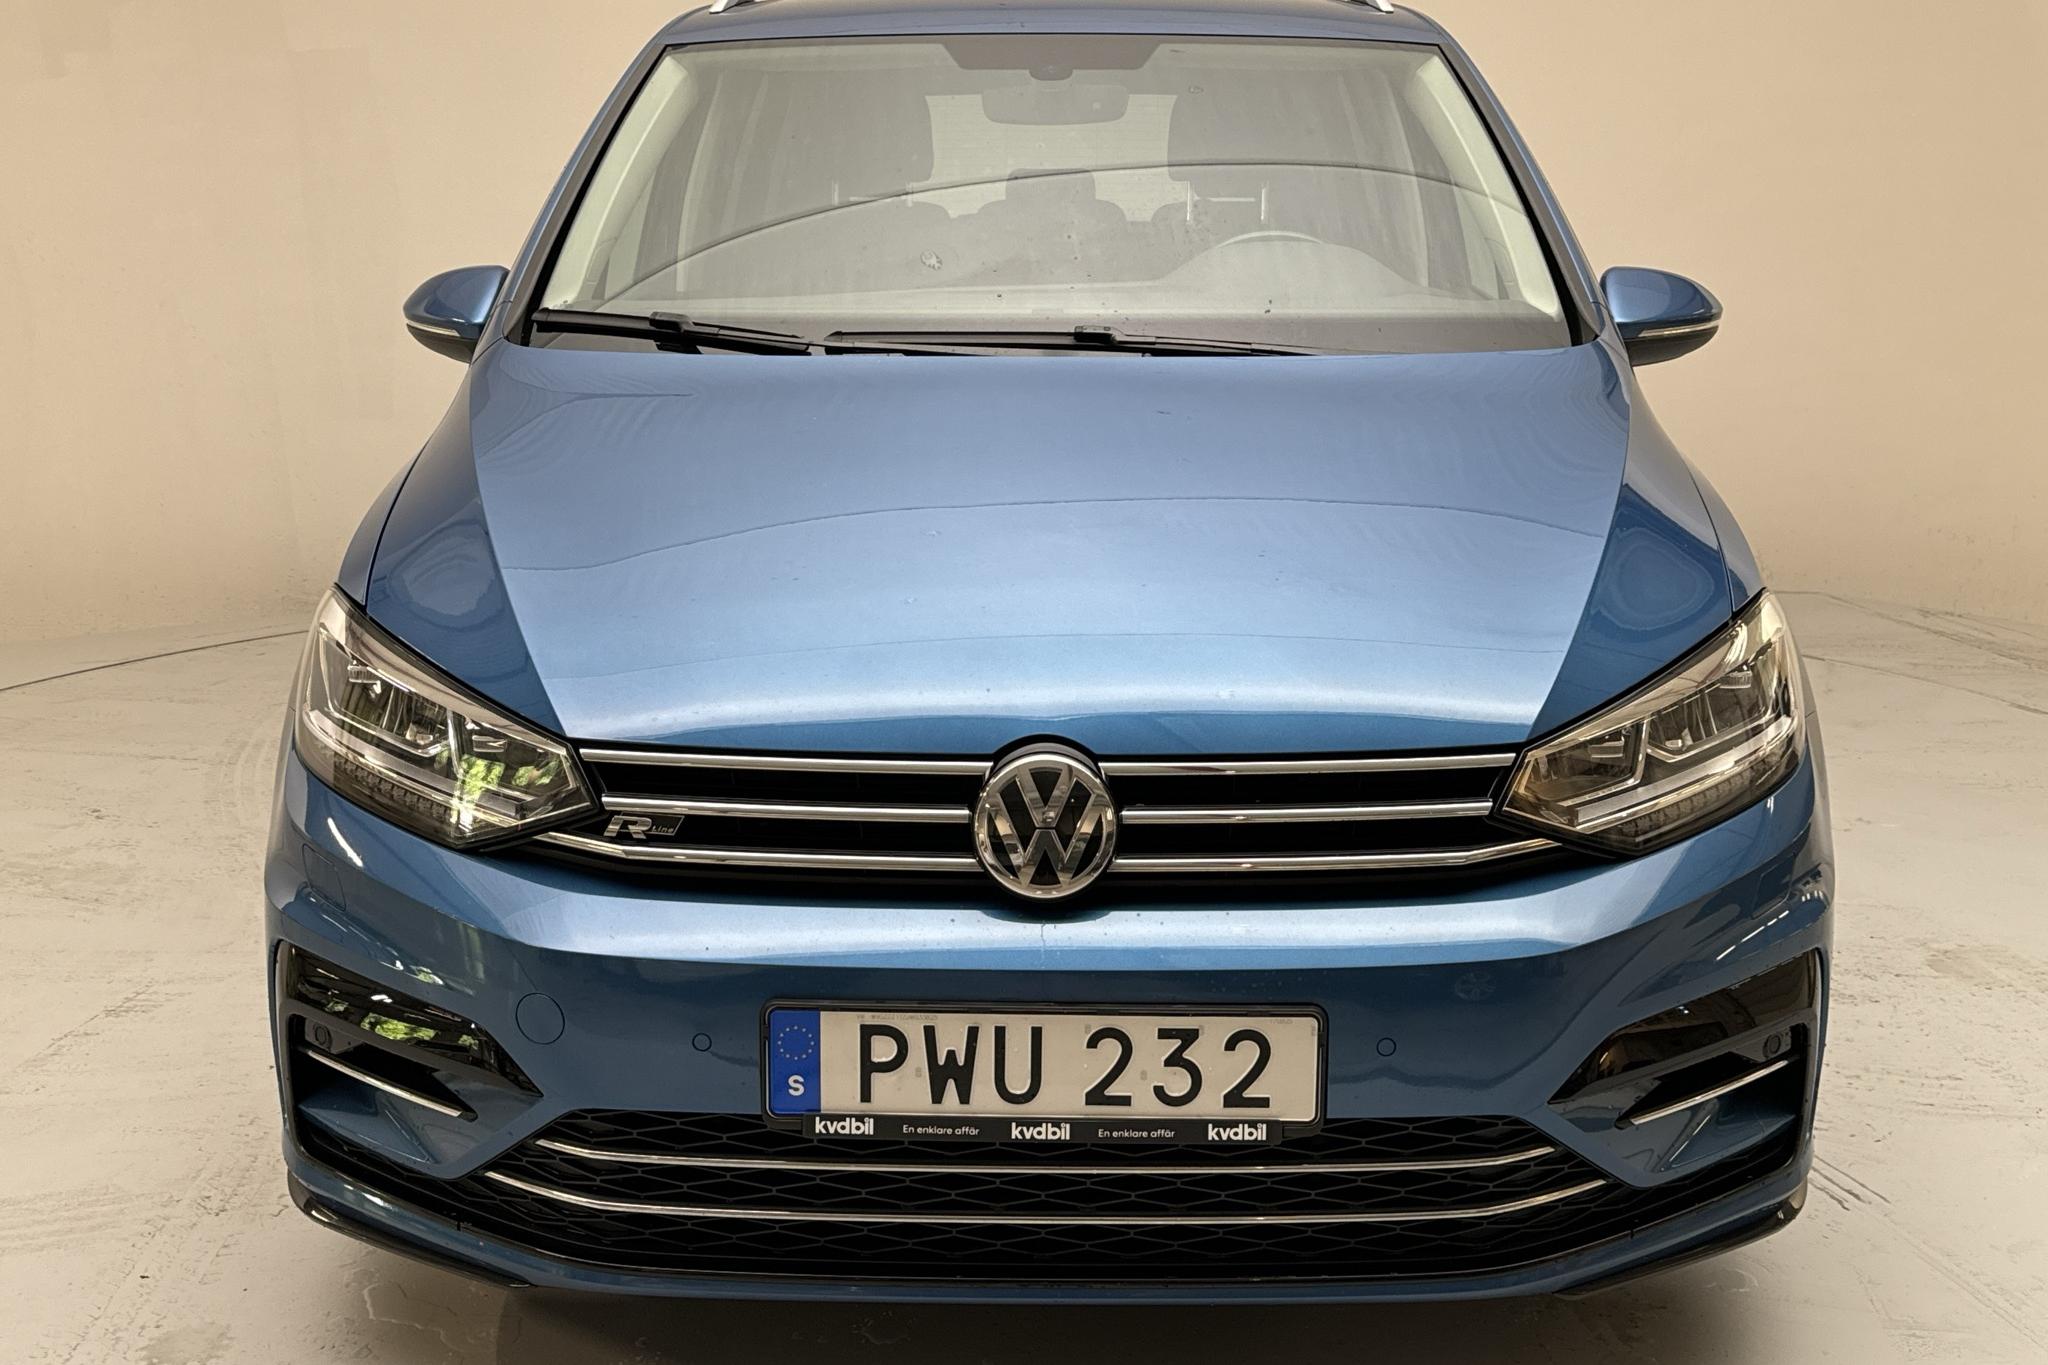 VW Touran 1.4 TSI (150hk) - 7 804 mil - Automat - Light Blue - 2018